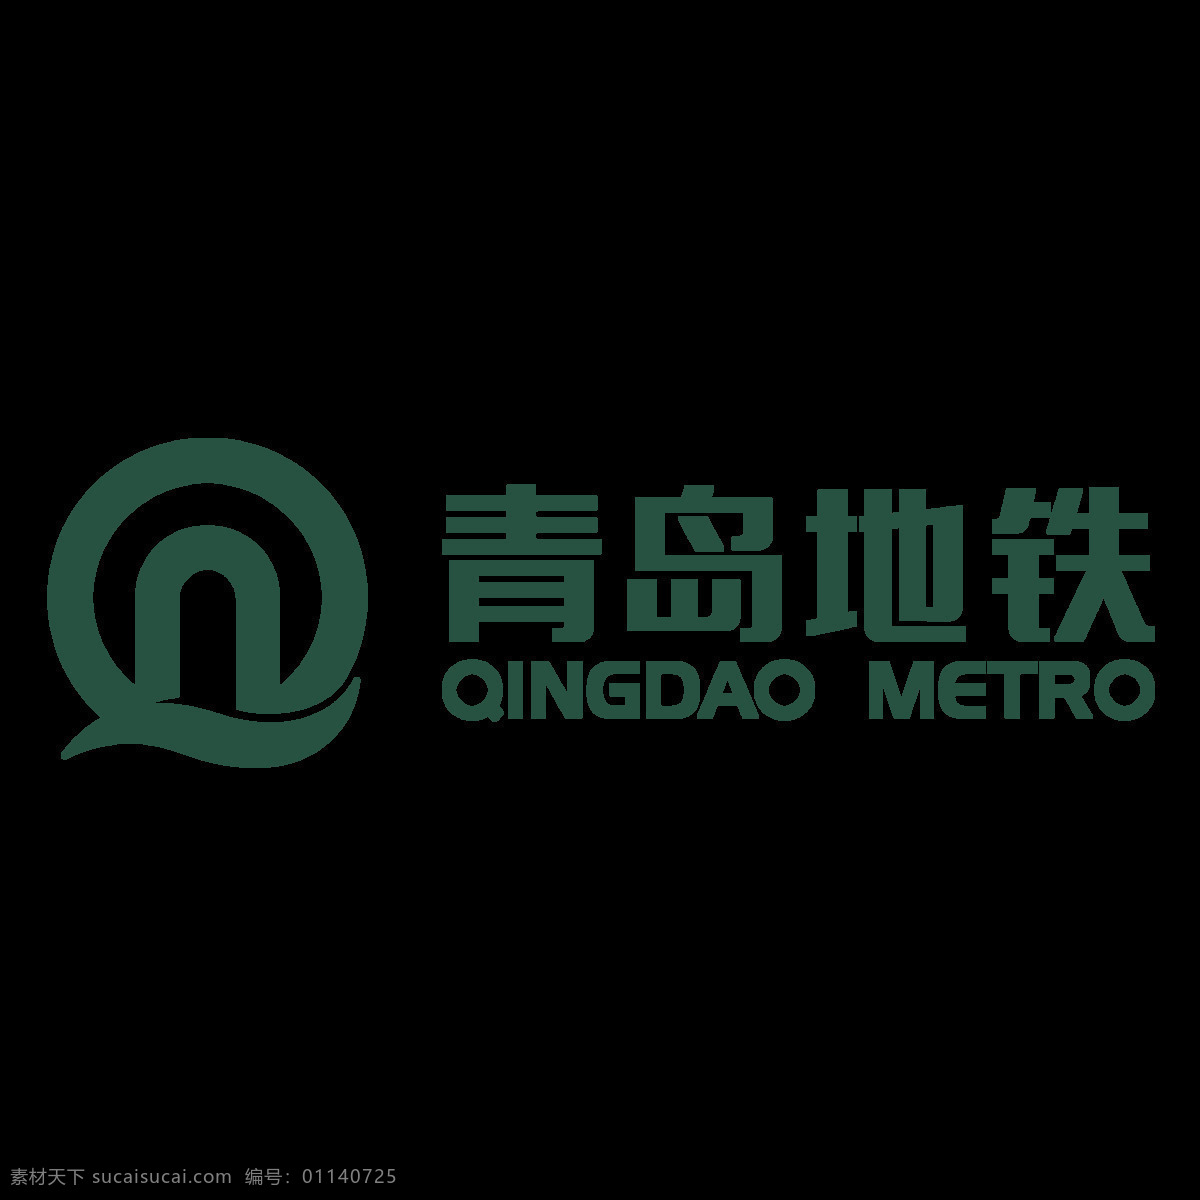 青岛 地铁 标志 标识 图标素材 青岛地铁 图标 字形标志